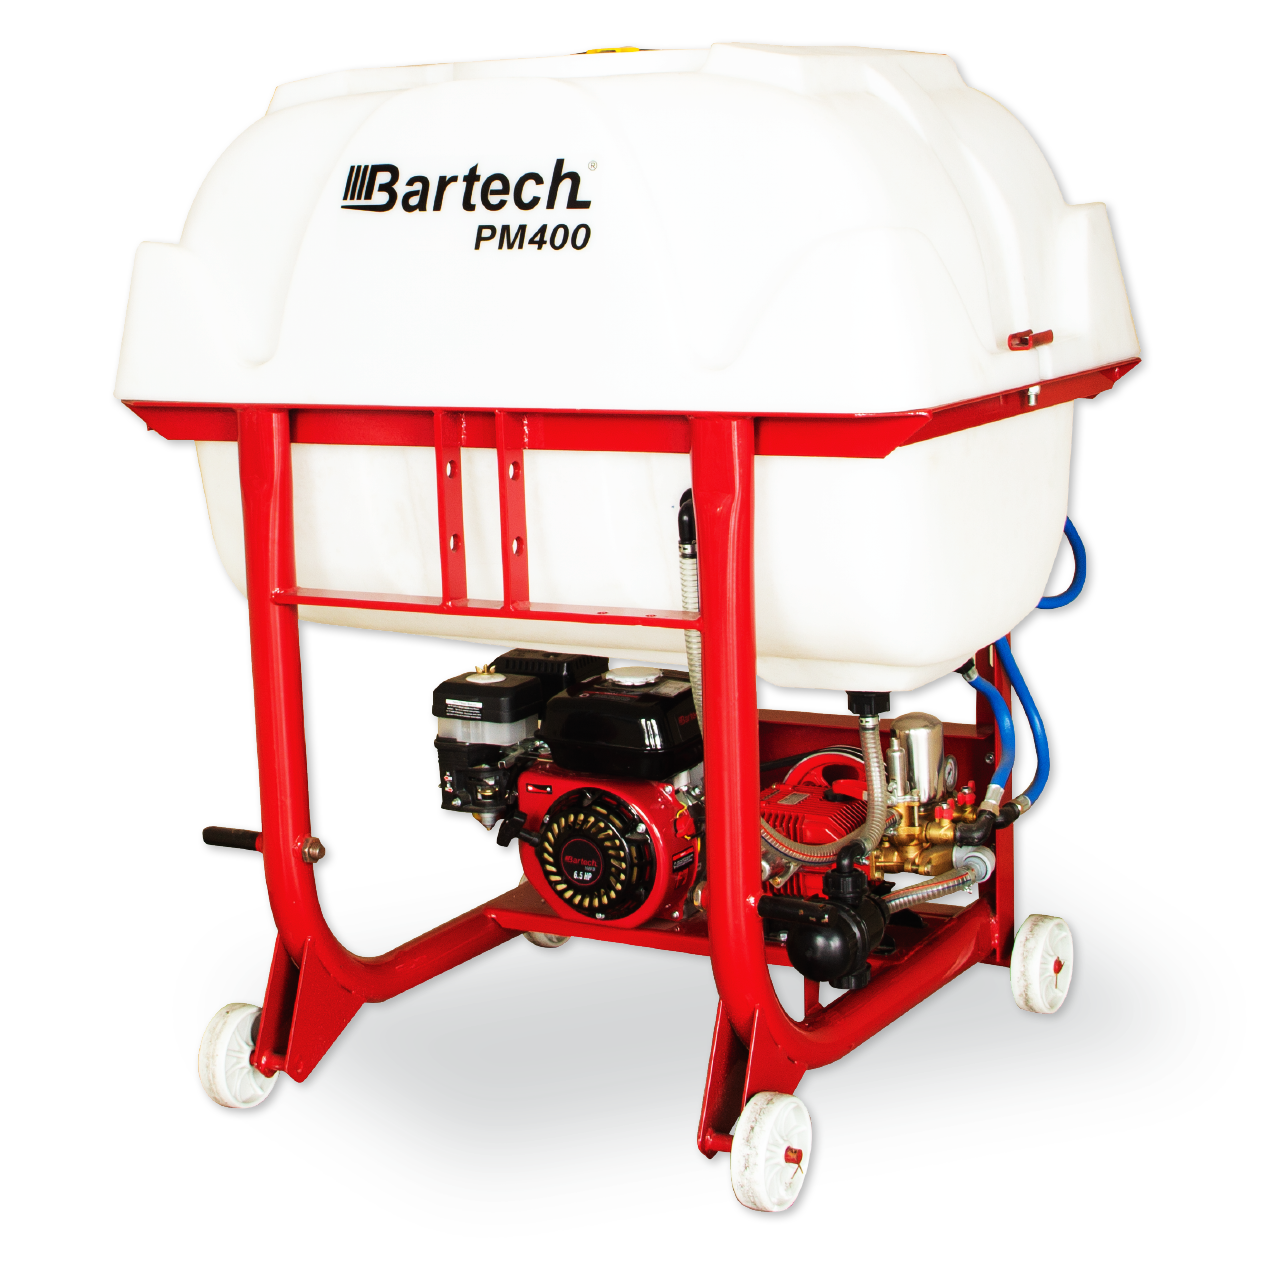 Bartech 7 Hp Benzin Motorlu Pülverizatör 400 Litre PM400-DİKEY İlaçlama Makinesi